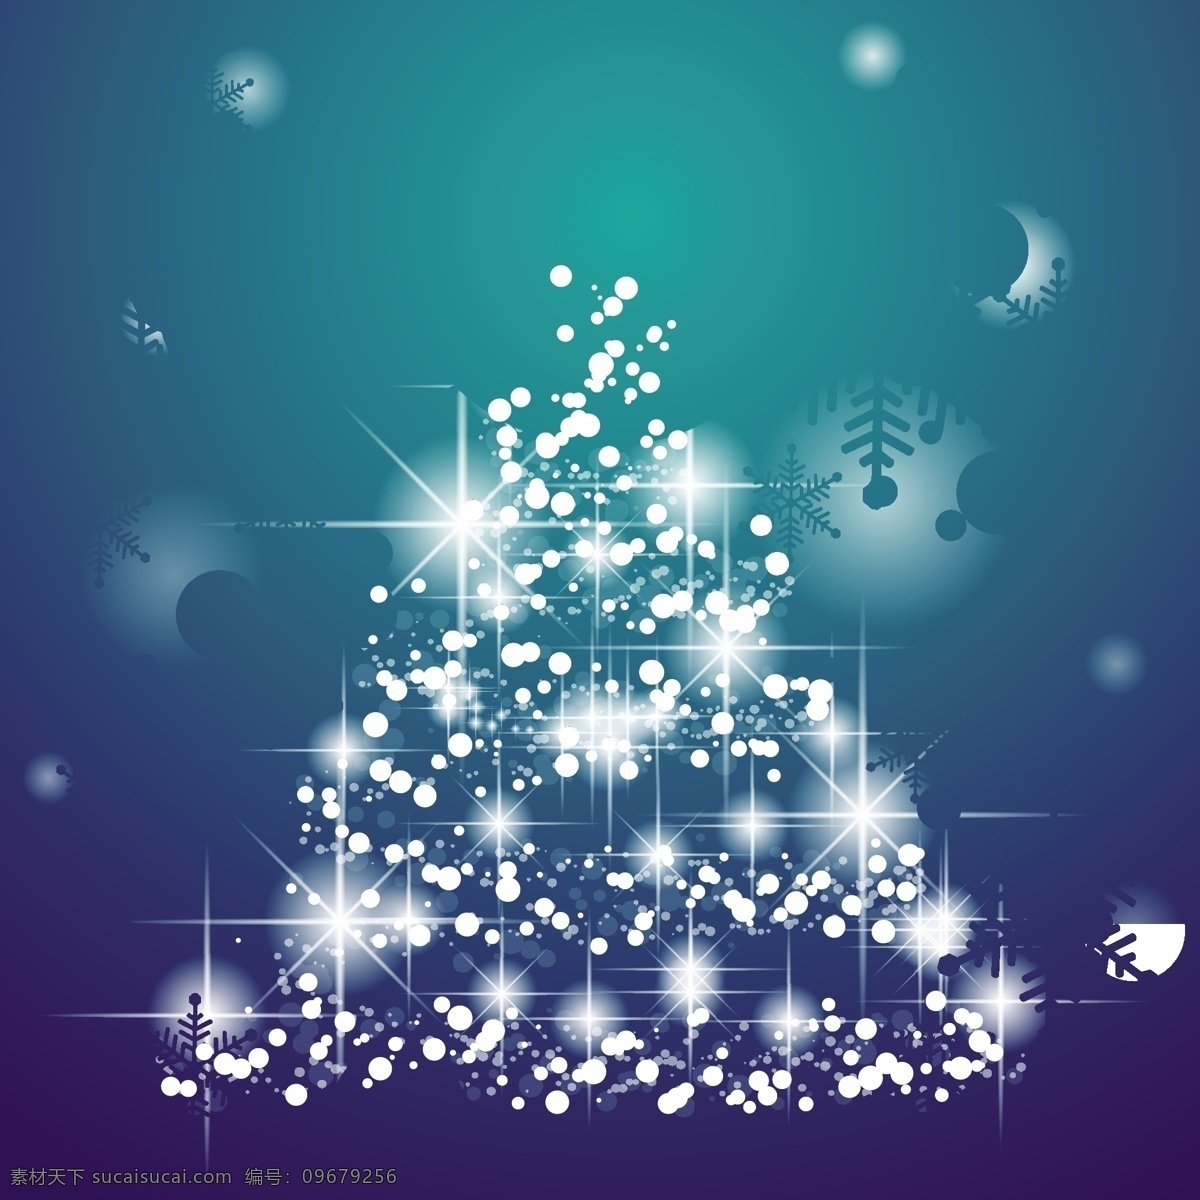 圣诞树 蓝色 背景 节日素材 蓝色背景 圣诞 圣诞节 圣诞树背景 圣诞素材 圣诞元素